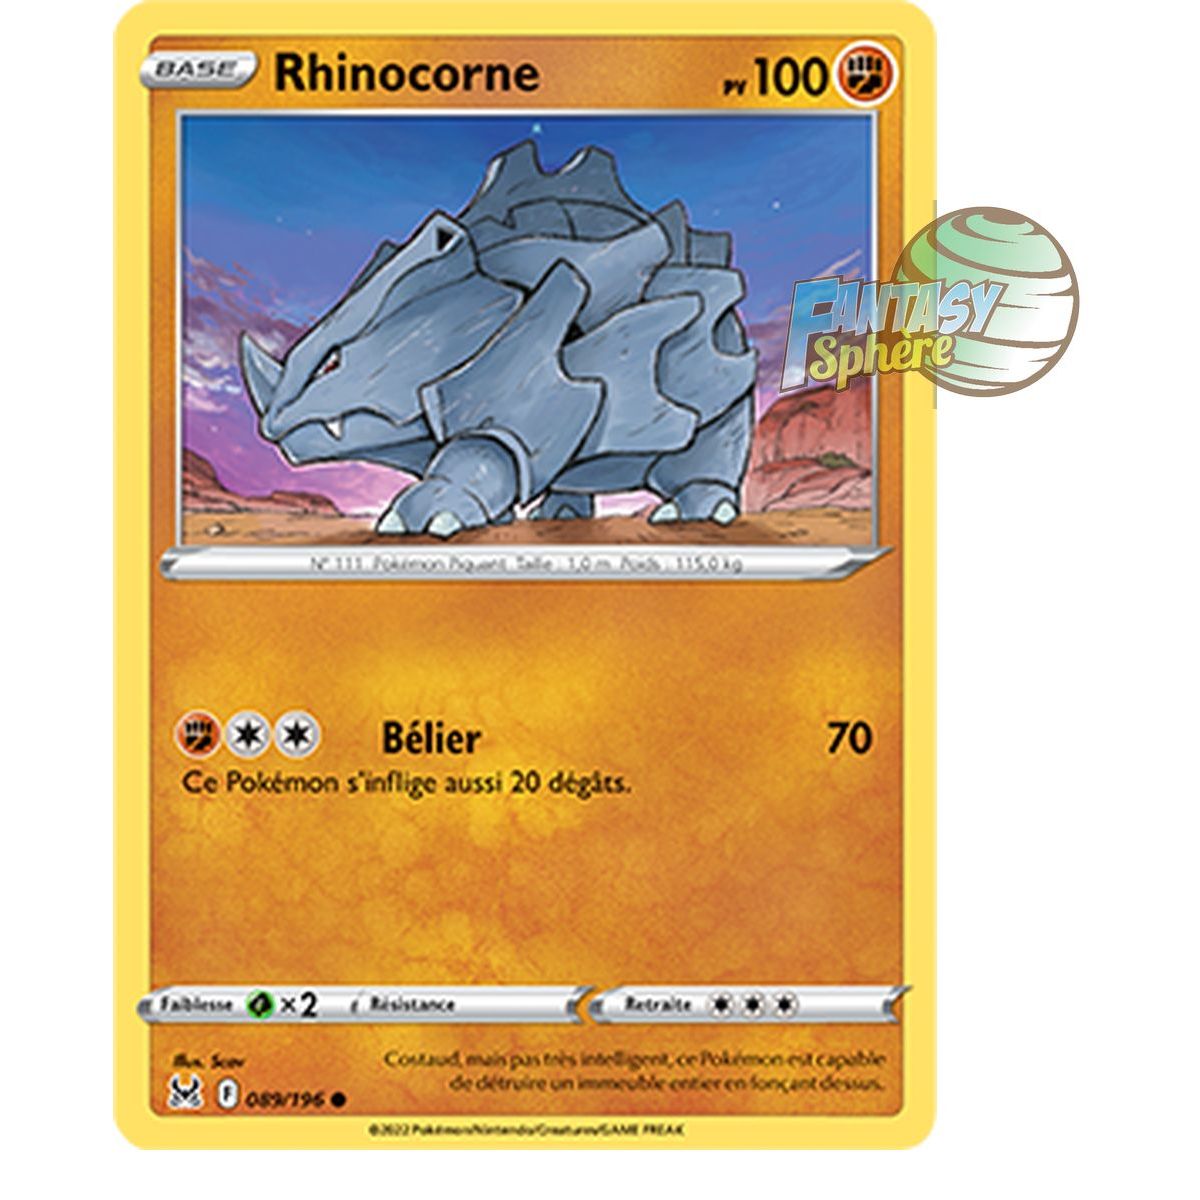 Rhinocorne - Commune 89/196 - Epee et Bouclier 11 Origine Perdue